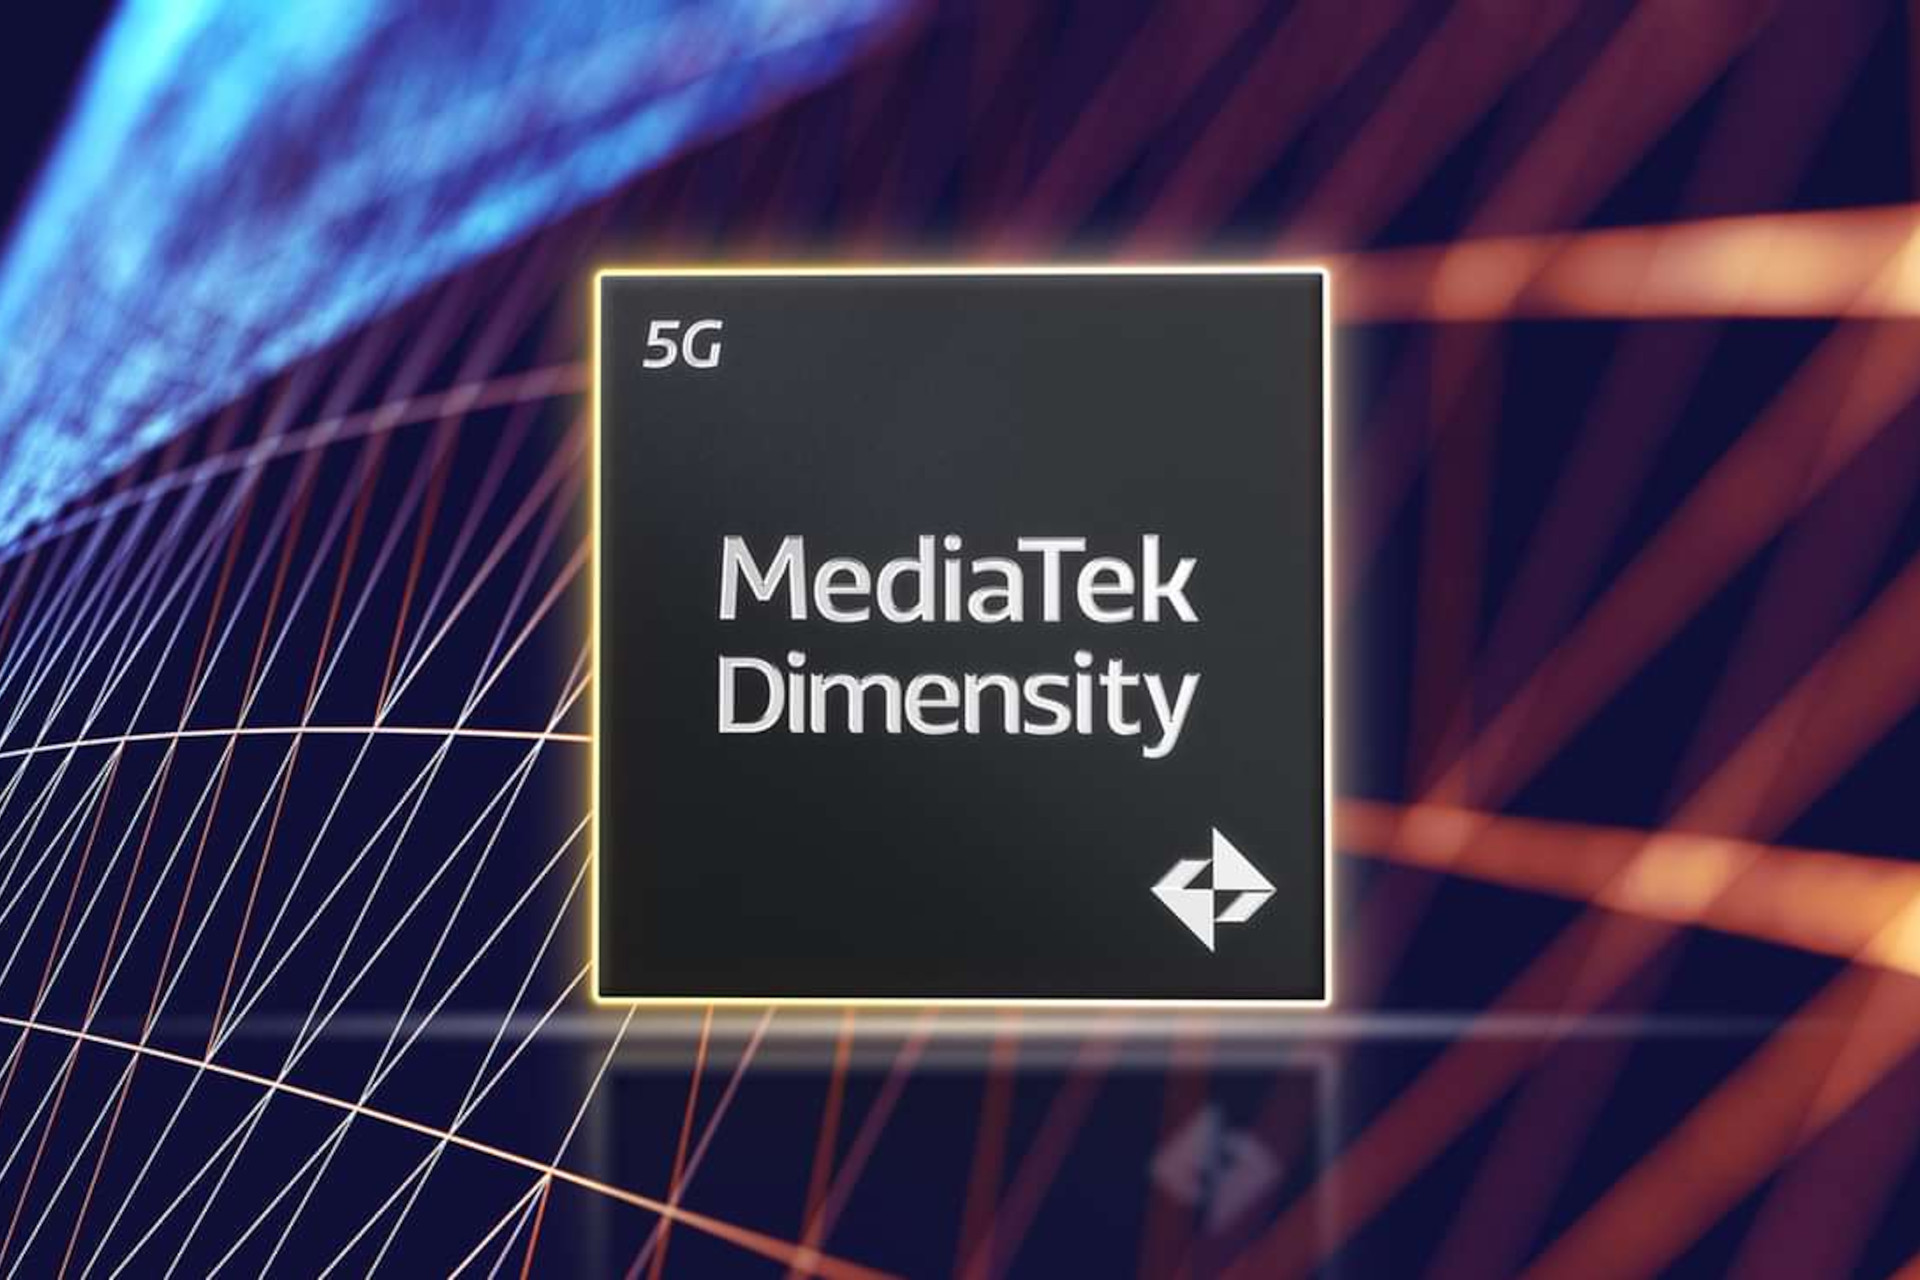 procesor MediaTek Dimensity 5G